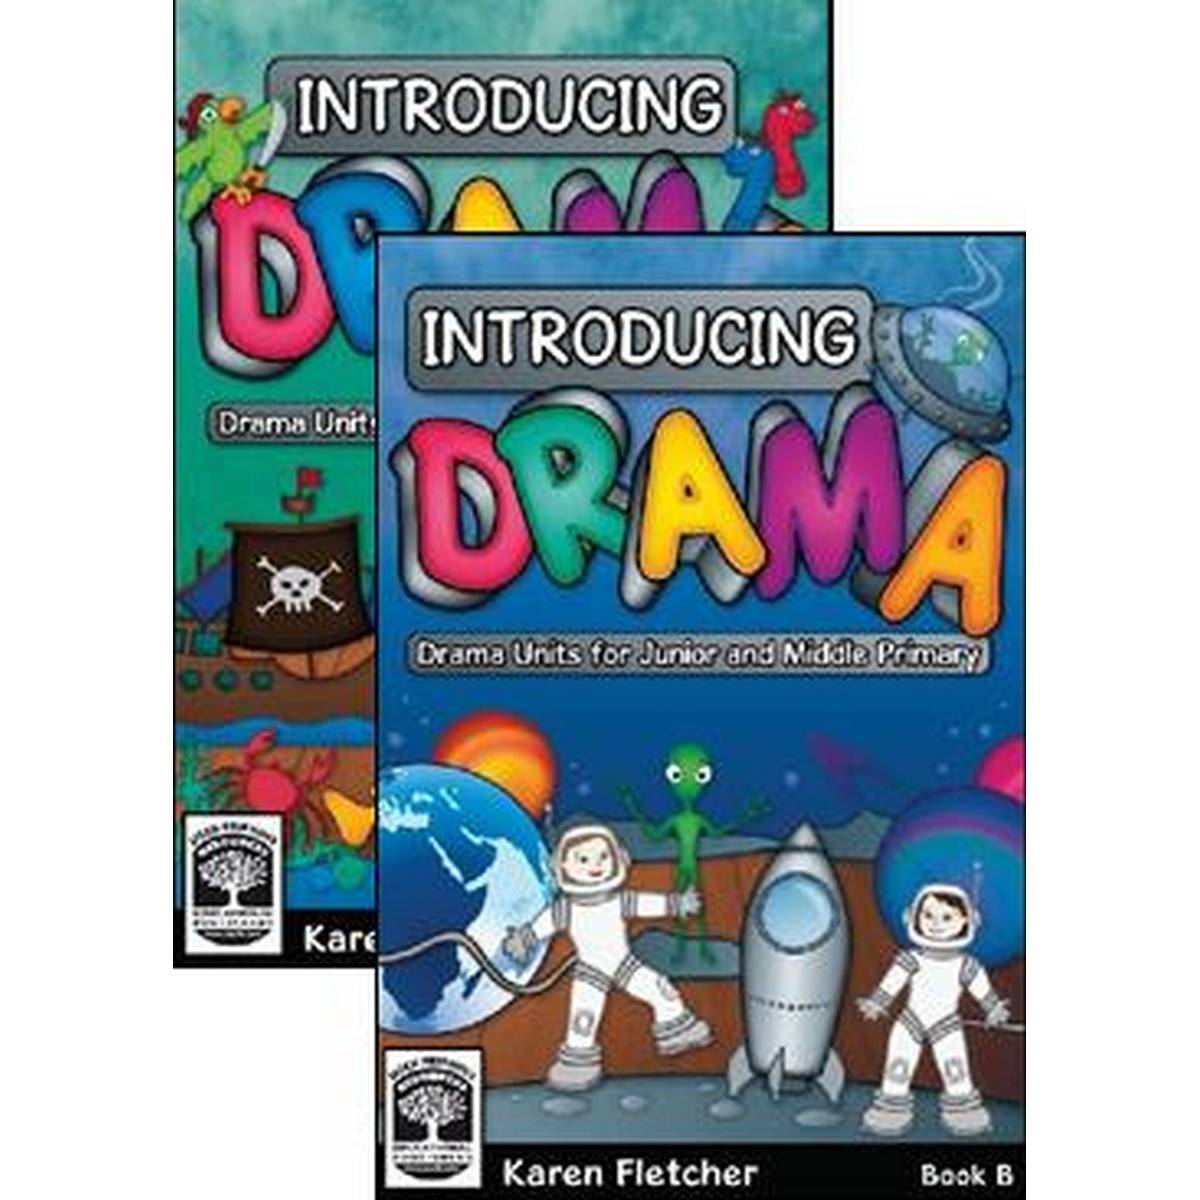 Introducing Drama Set (Book A & Book B)